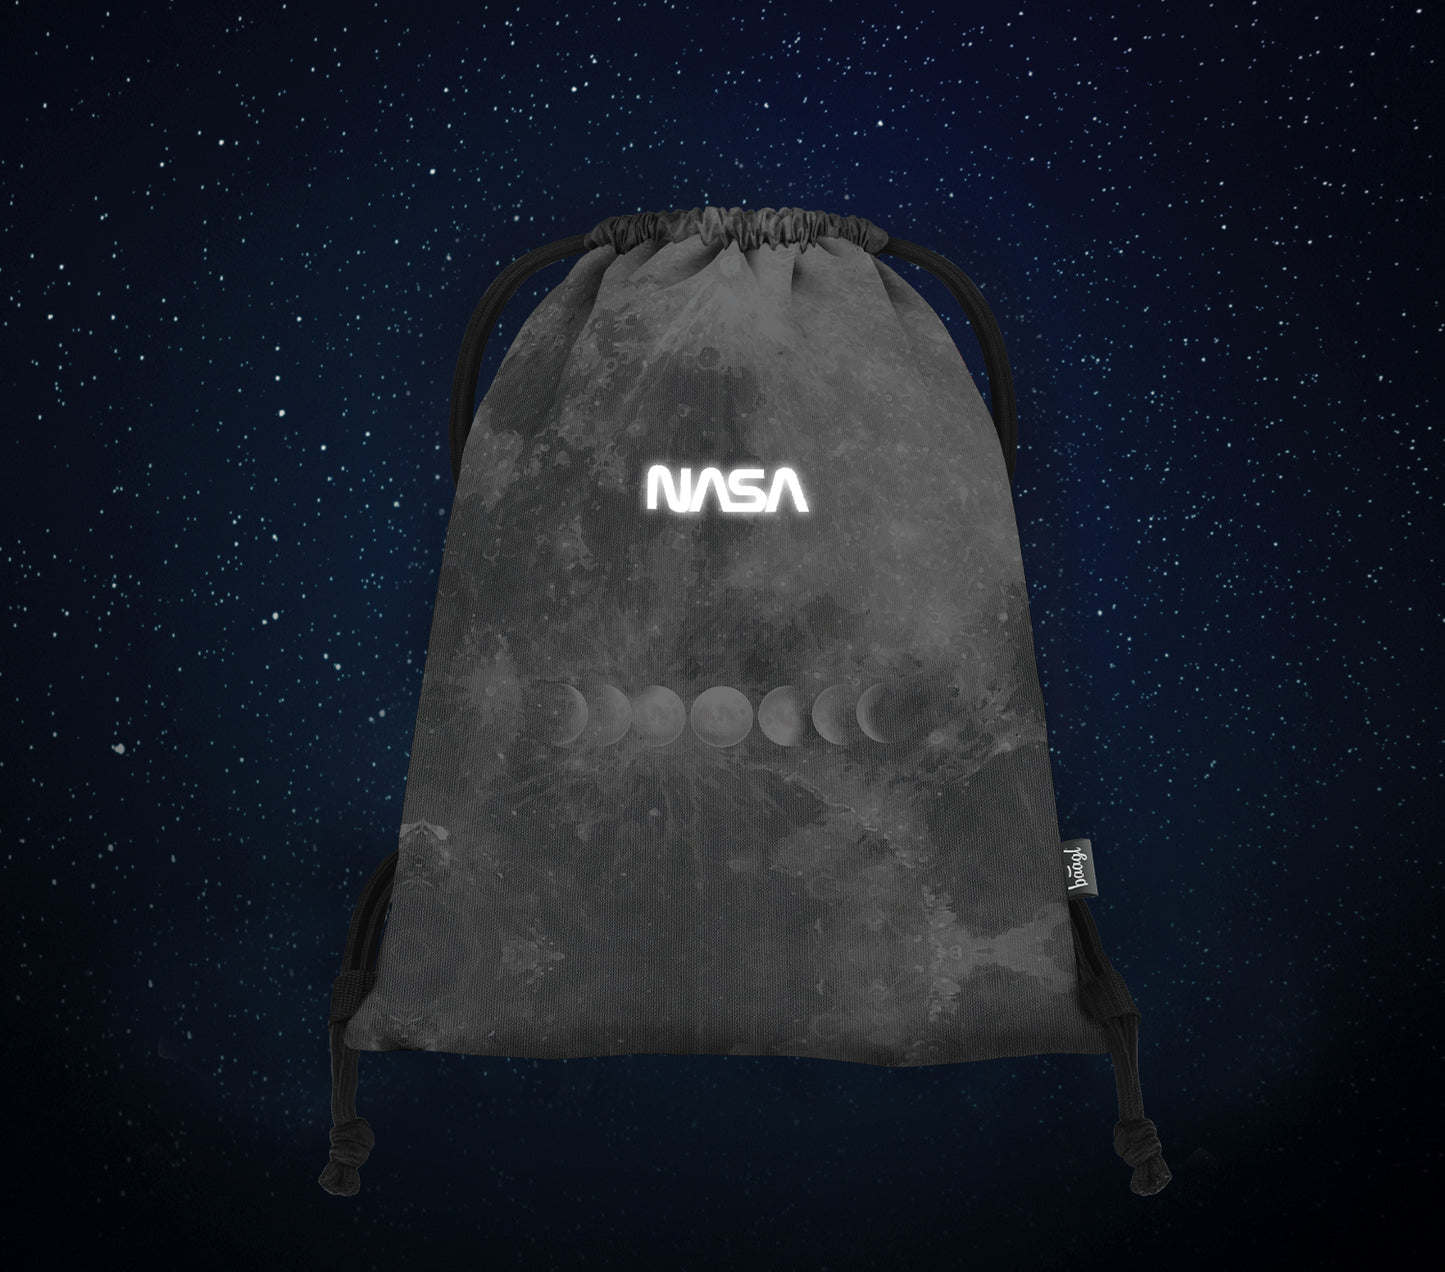 Vrecko NASA Grey